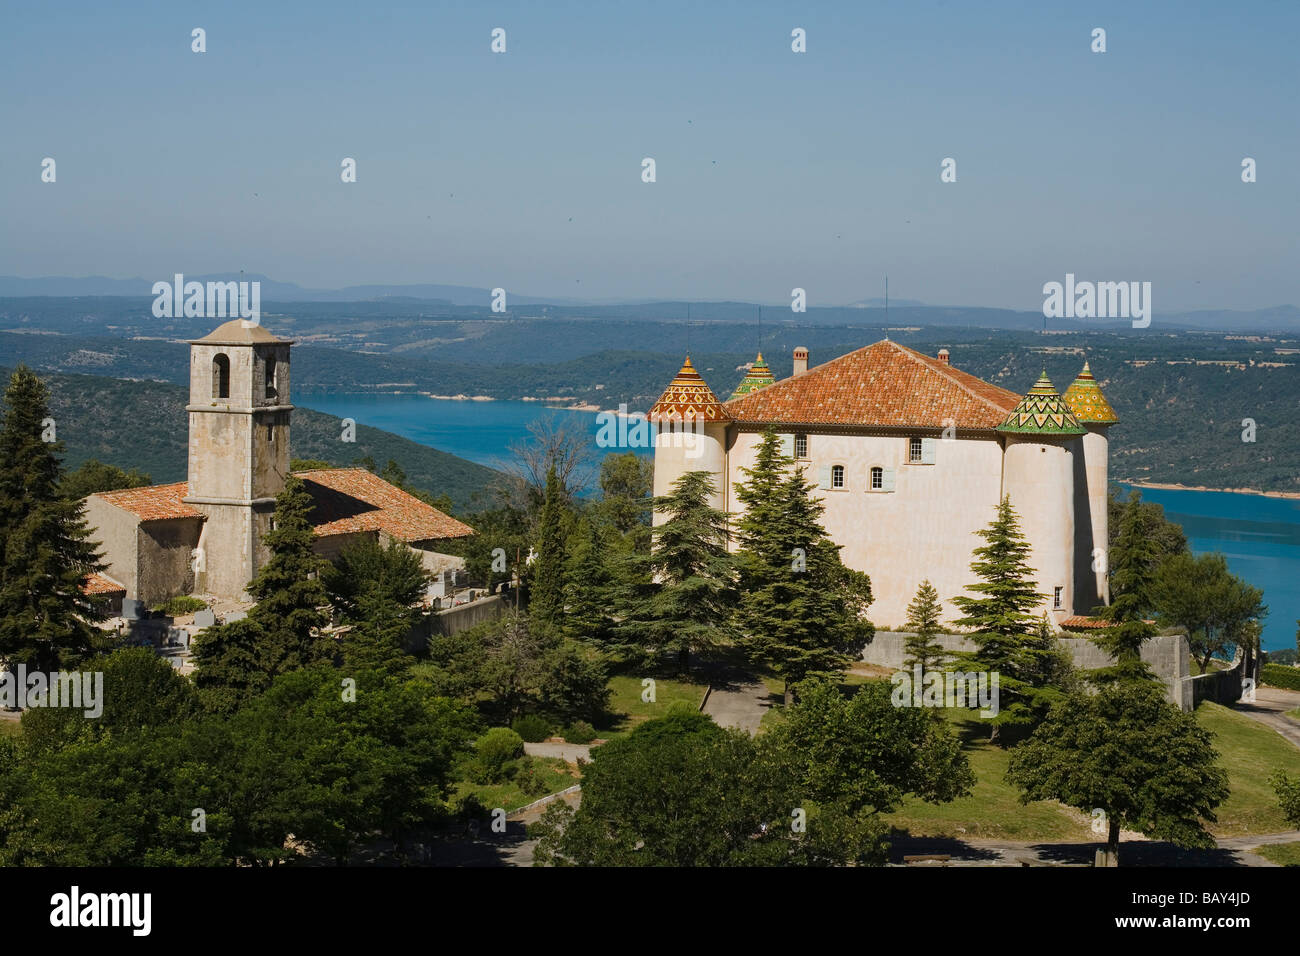 Blick auf Schloss und Kirche des Dorfes Aiguines oberhalb des Sees Lac de Ste Croix, Var, Provence, Frankreich Stockfoto